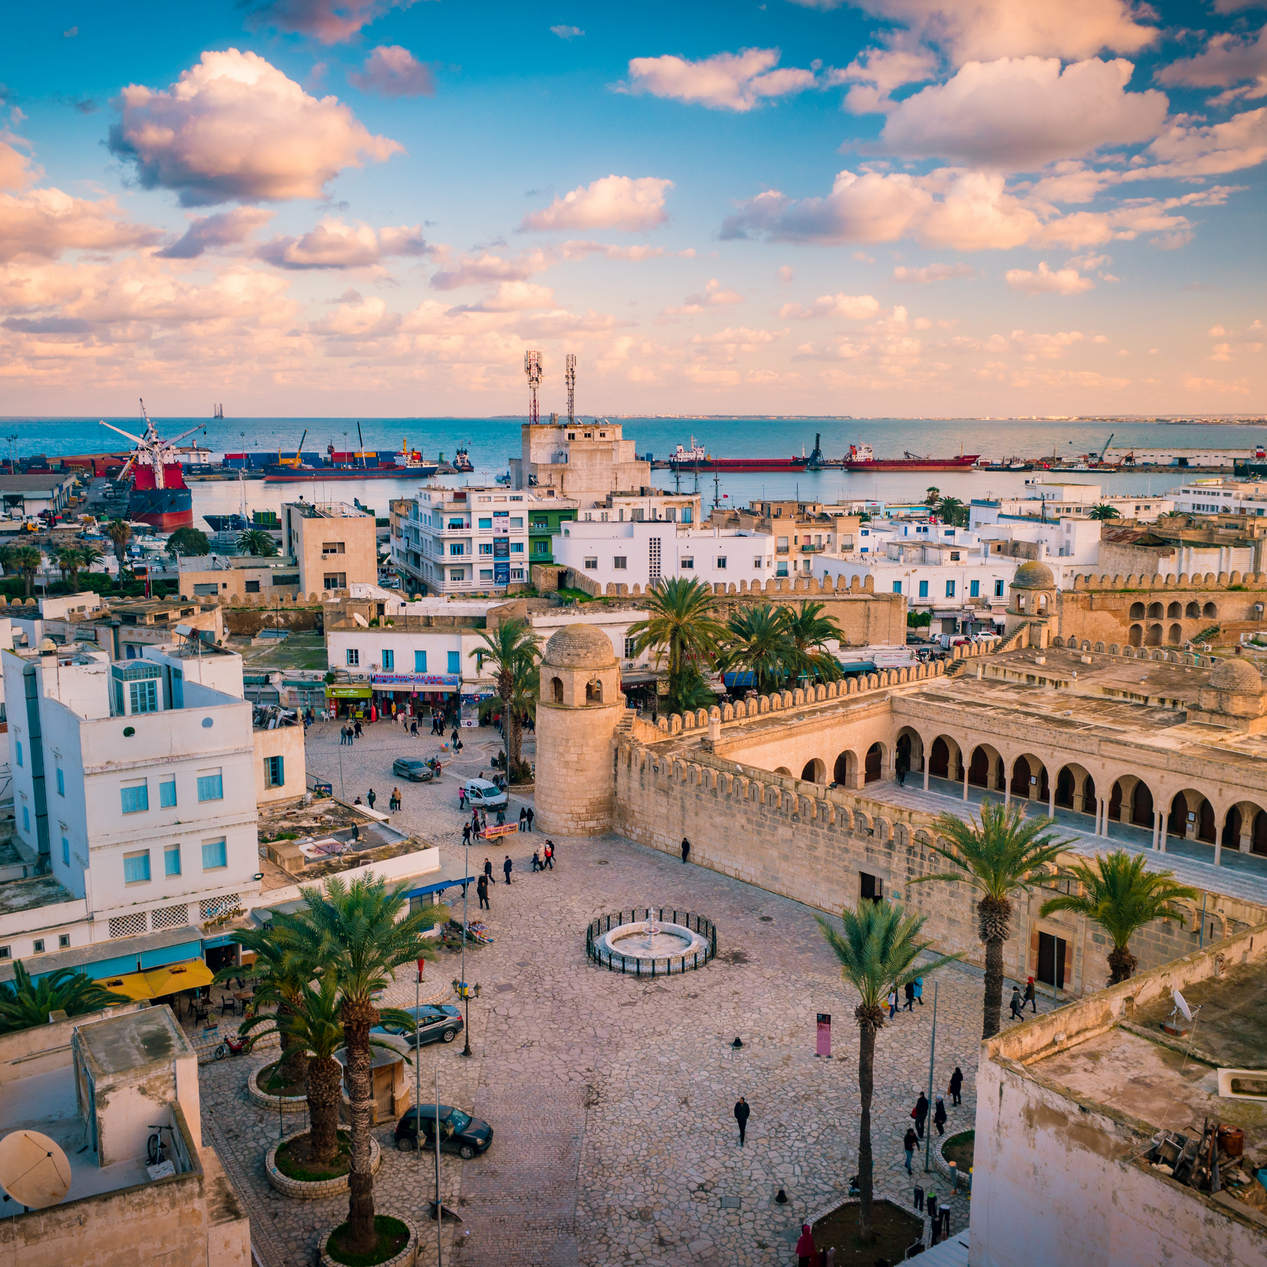 Τυνησία - Μεγάλος γύρος Οάσεων